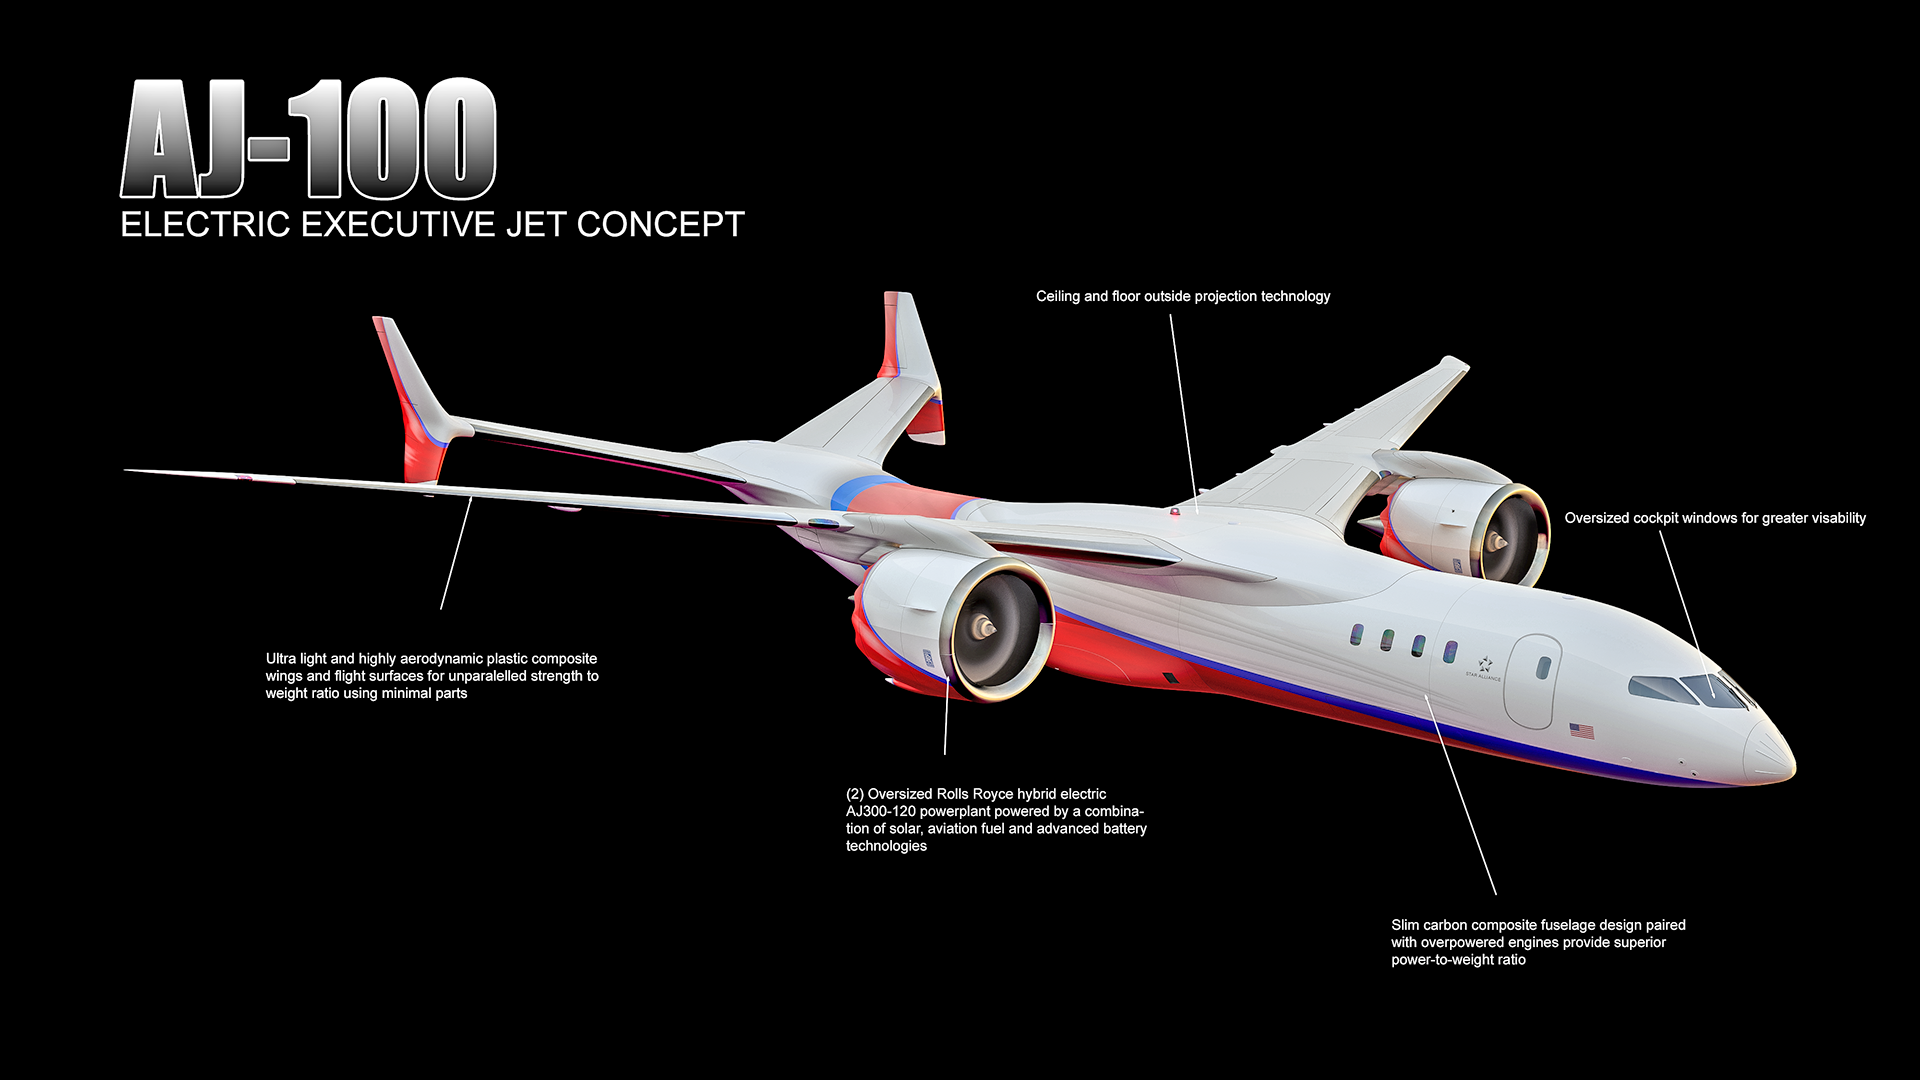 ajet-100飞机概念设计